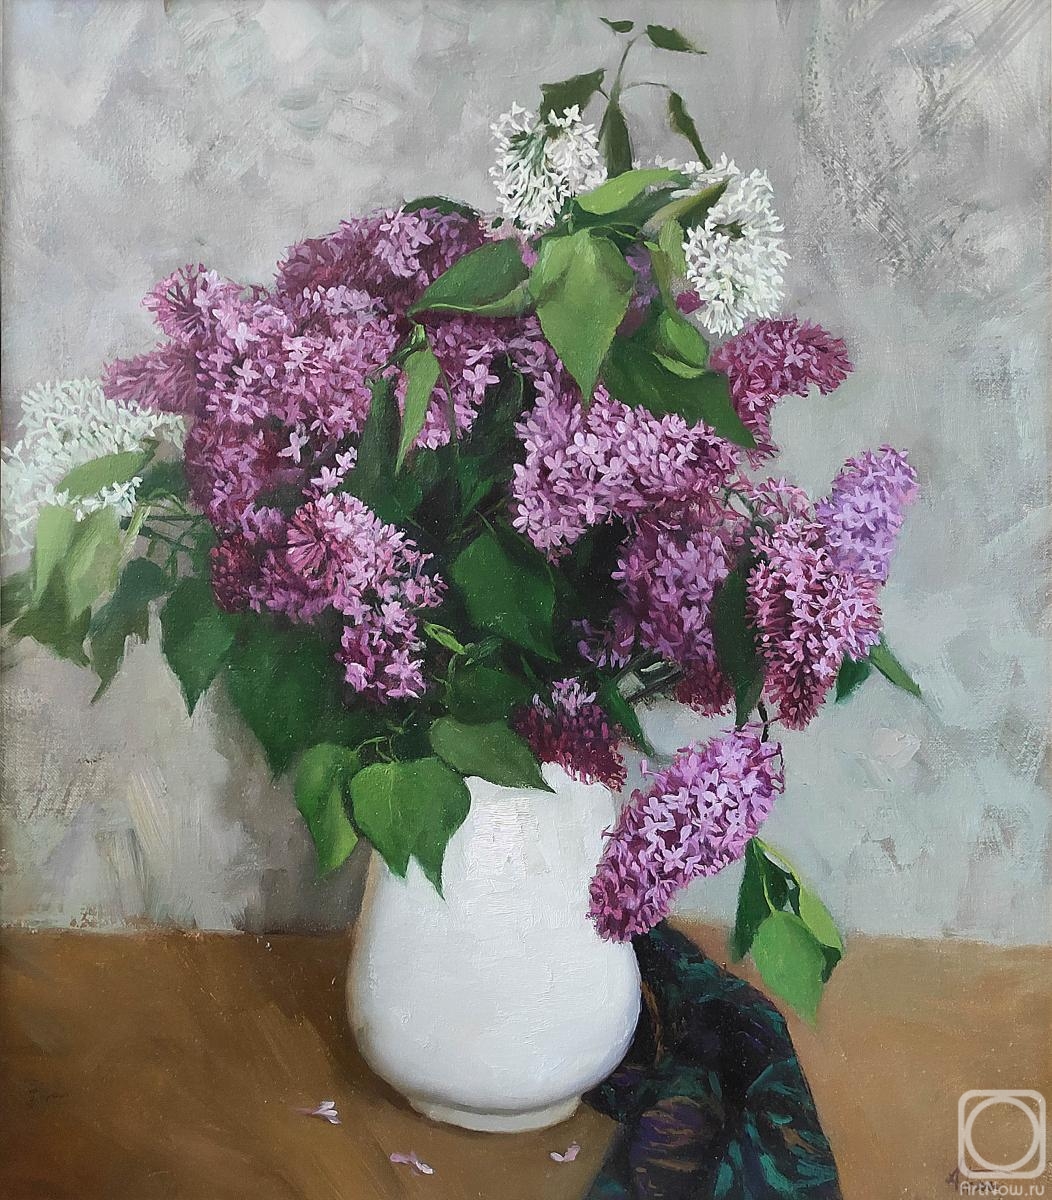 Balychev Andrey. Lilac